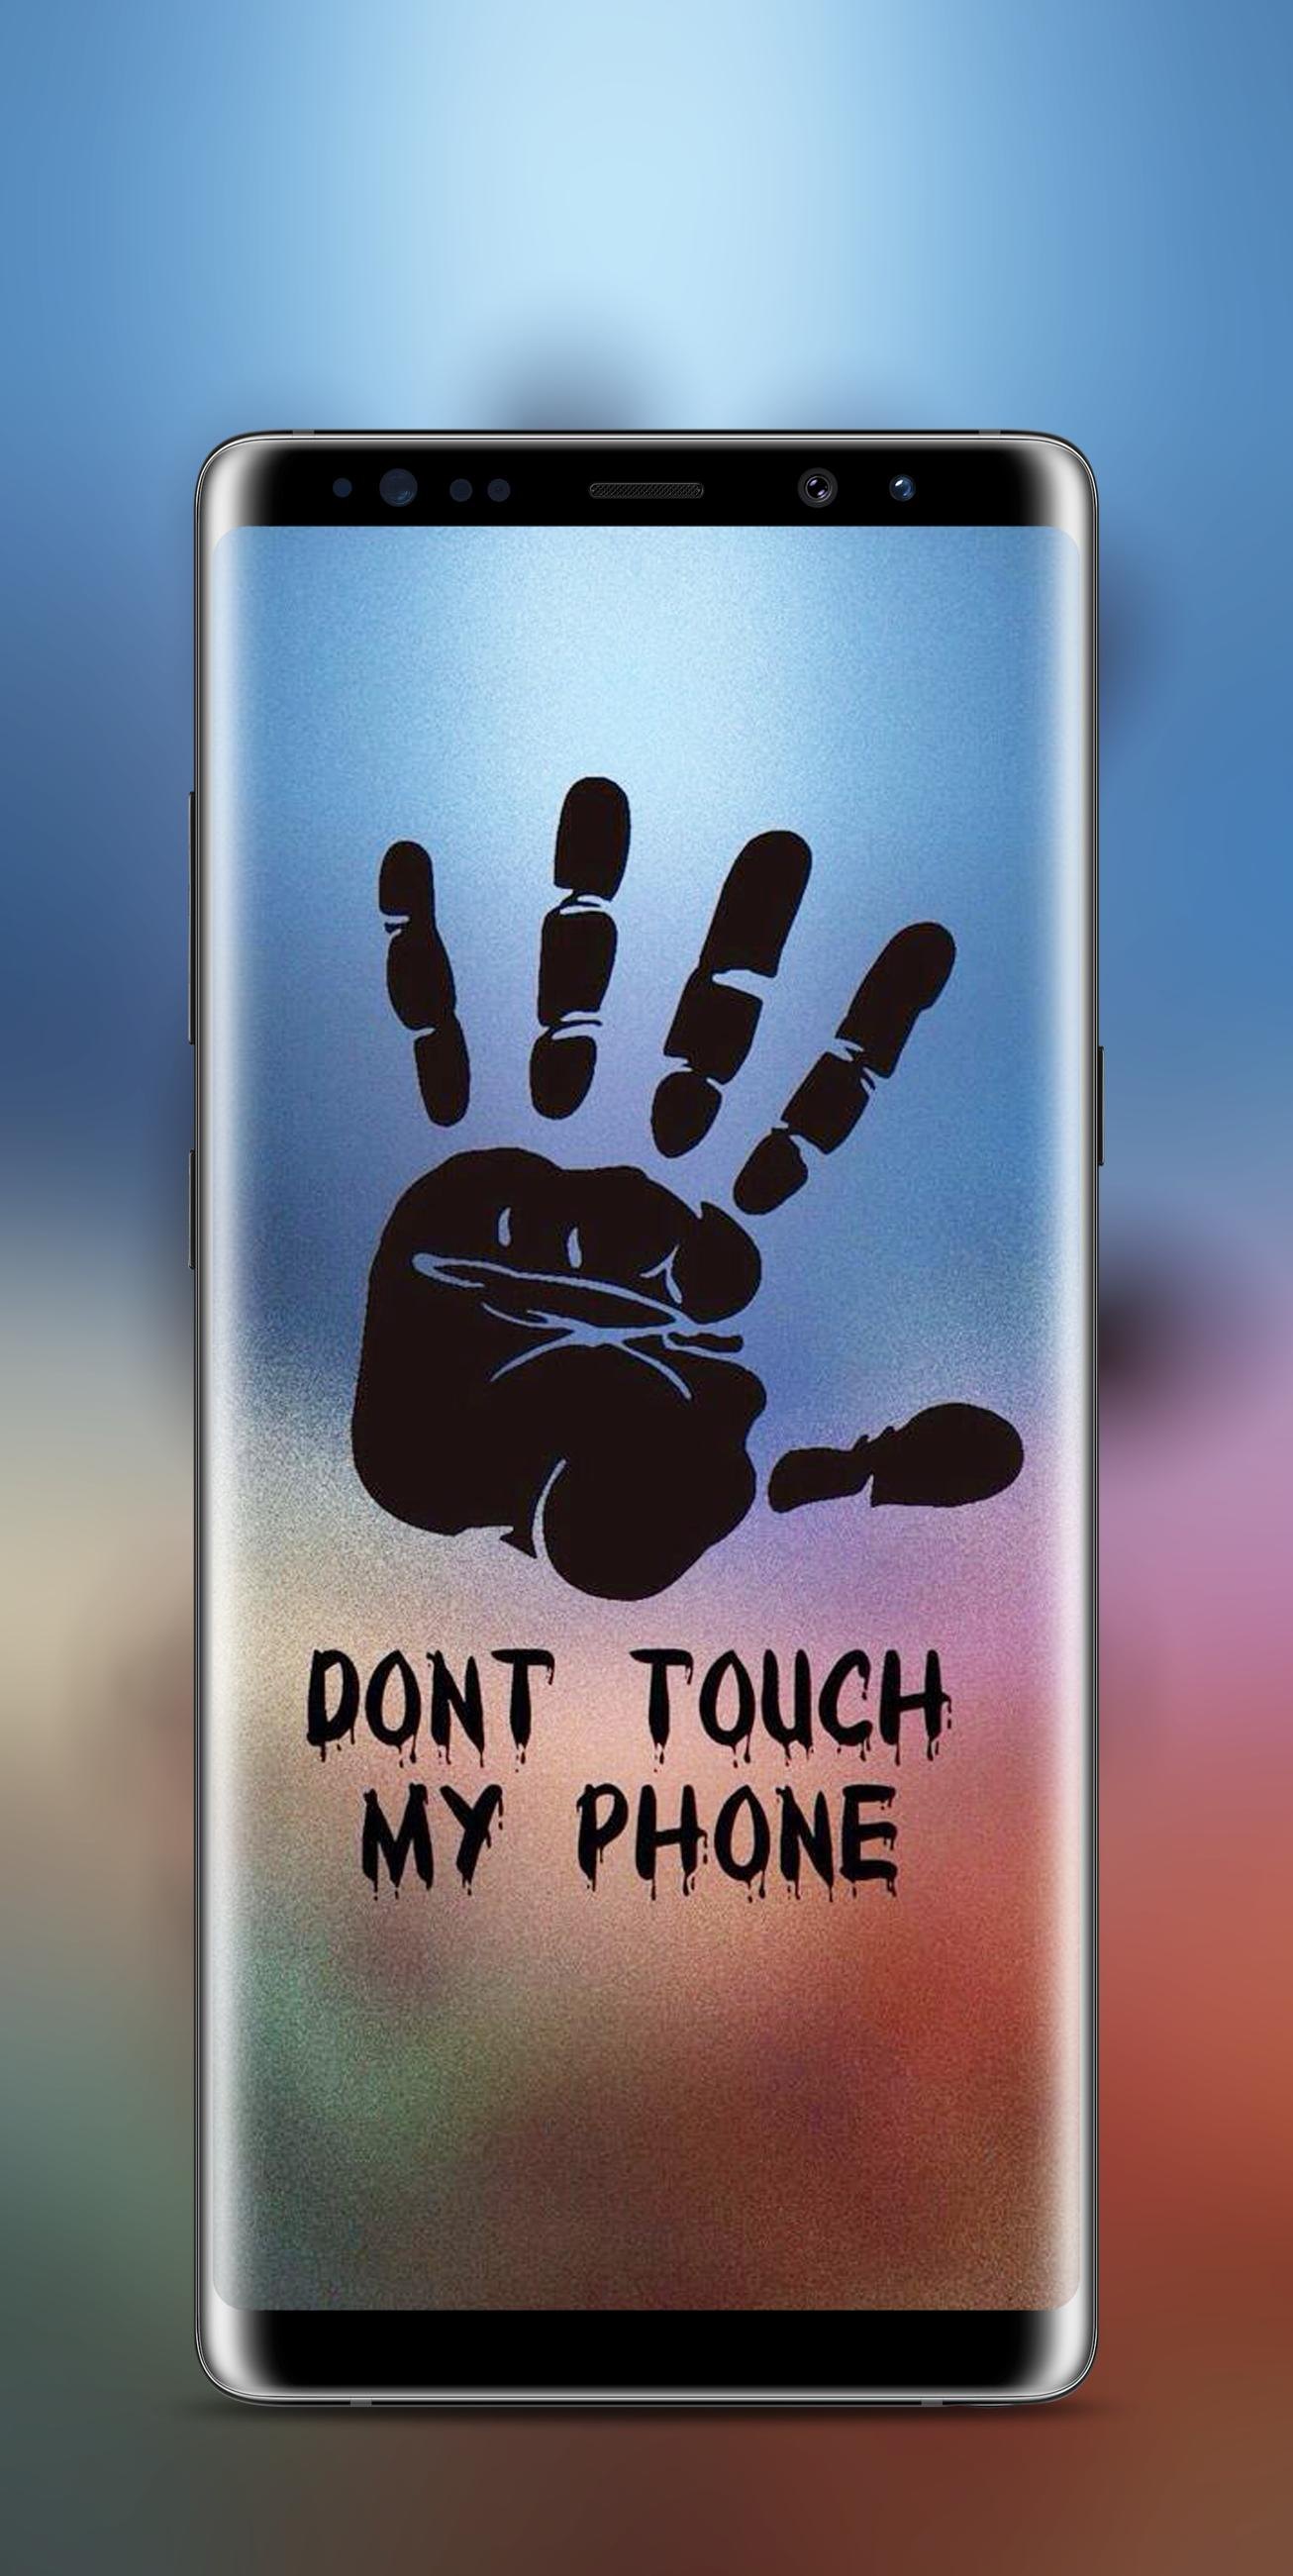 Не закрывайте верхнюю часть телефона. Не трогай мой телефон. Прикольный экран блокировки. Обои не трогай мой телефон. Смешные надписи на экран блокировки телефона.